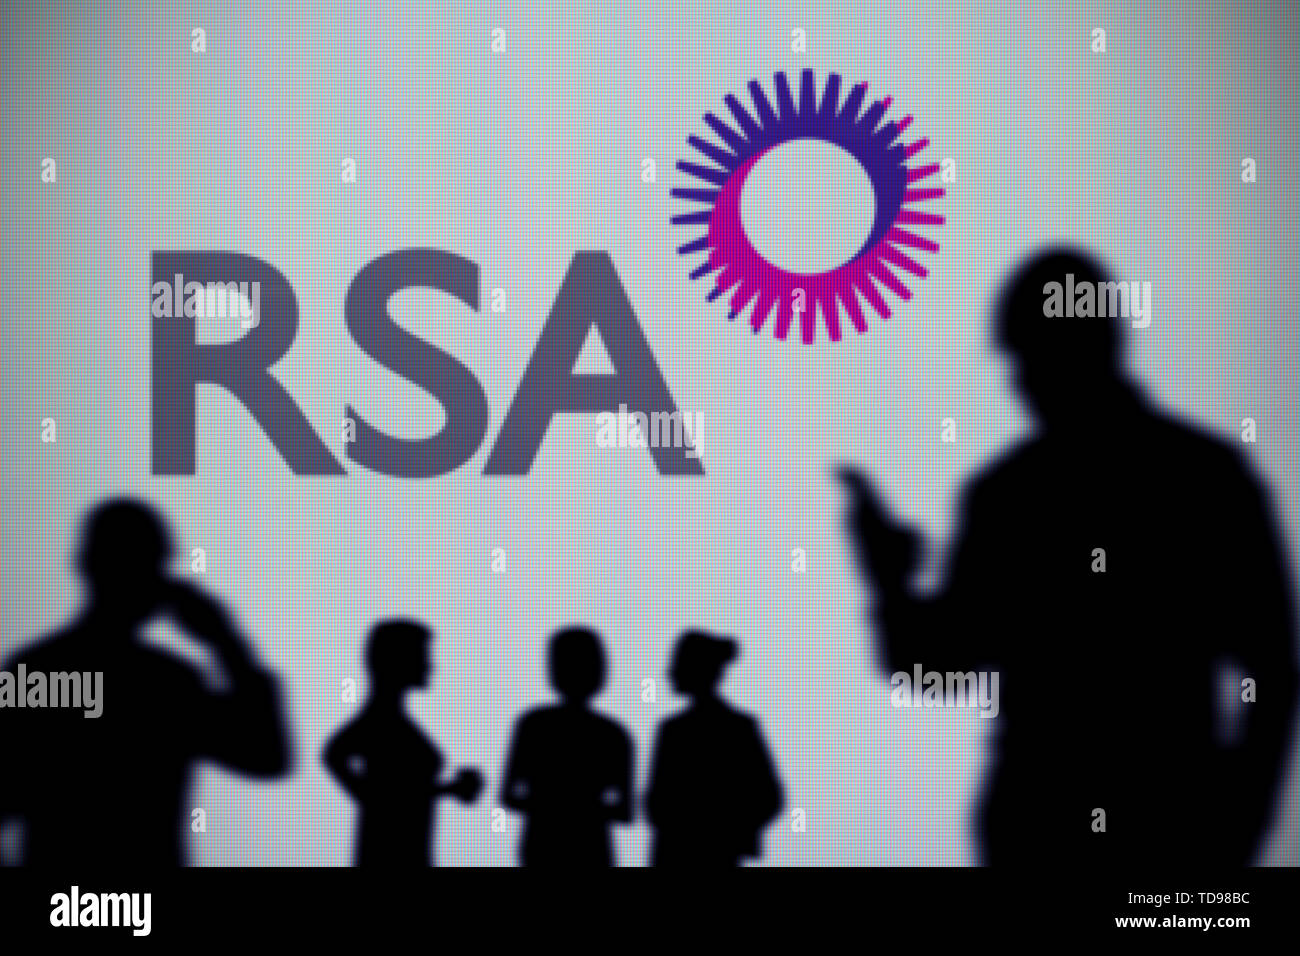 Das Royal Sun Alliance (RSA) Logo auf dem LED-Bildschirm im Hintergrund zu sehen ist, während eine Silhouette Person ein Smartphone verwendet (nur redaktionelle Nutzung) Stockfoto